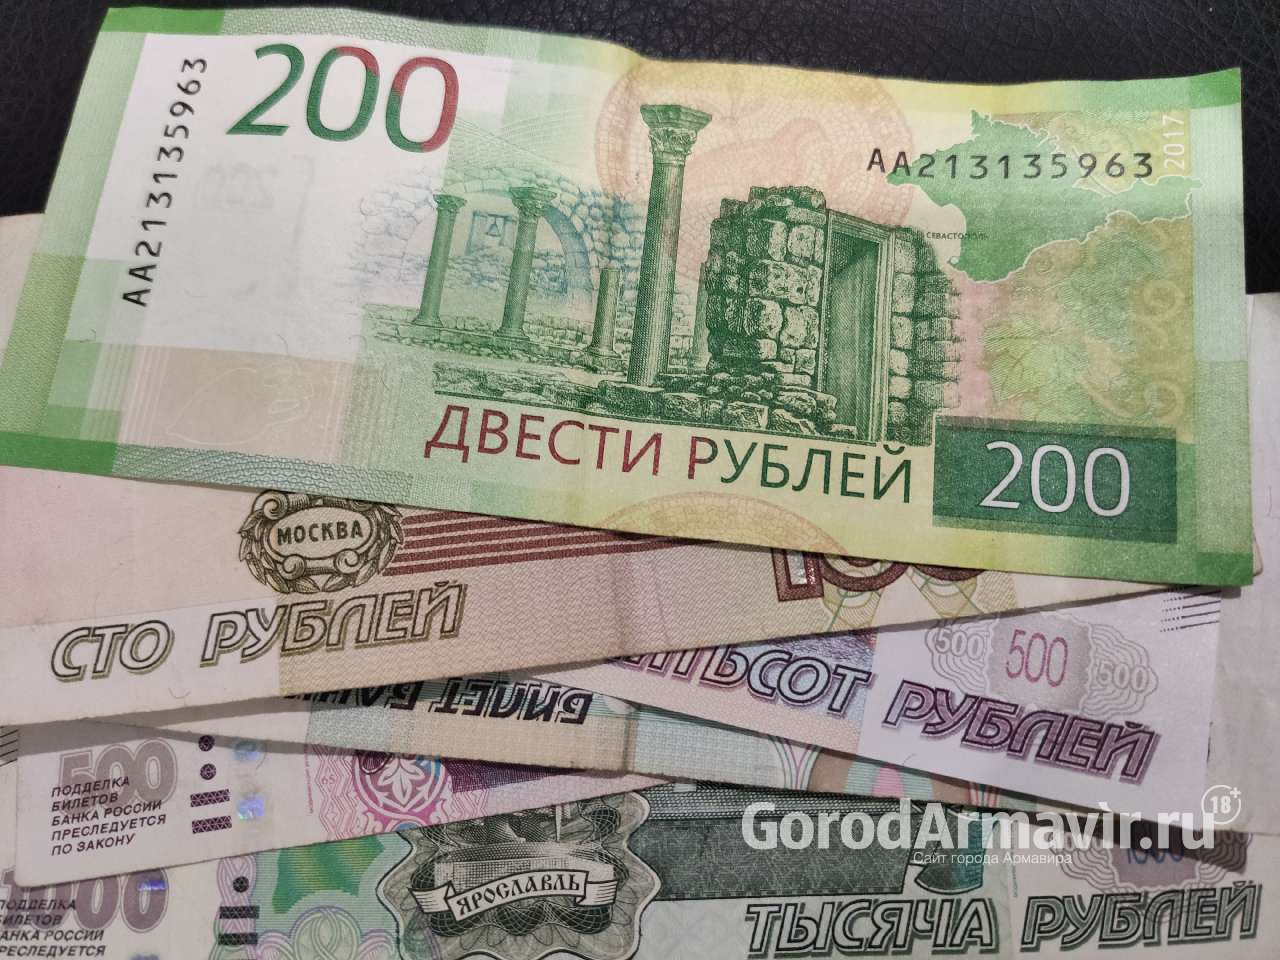 Жительница Армавира оформила кредиты на 200 тыс руб на имя знакомой 